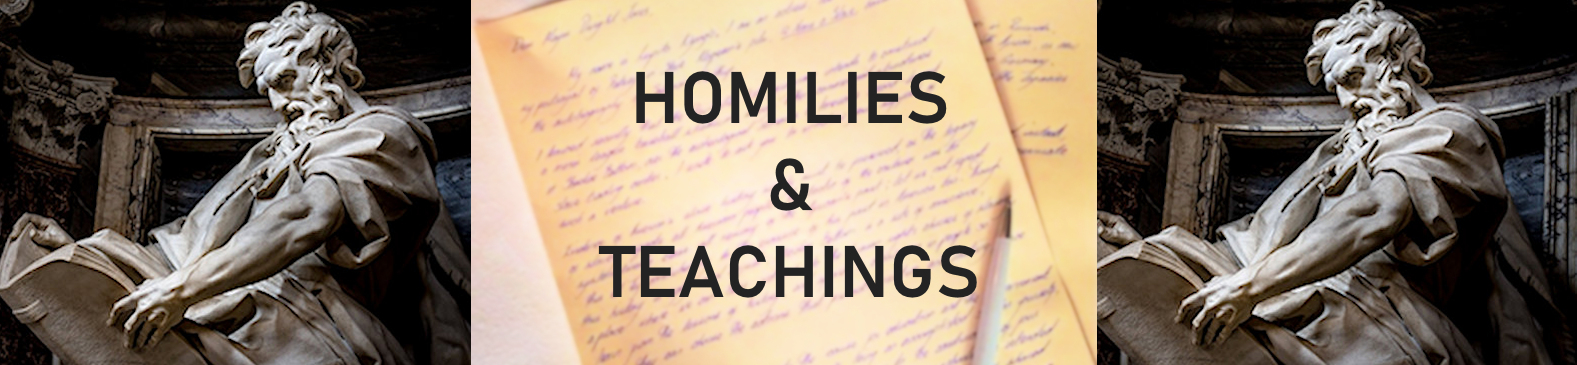 Homilies & Teachings Banner